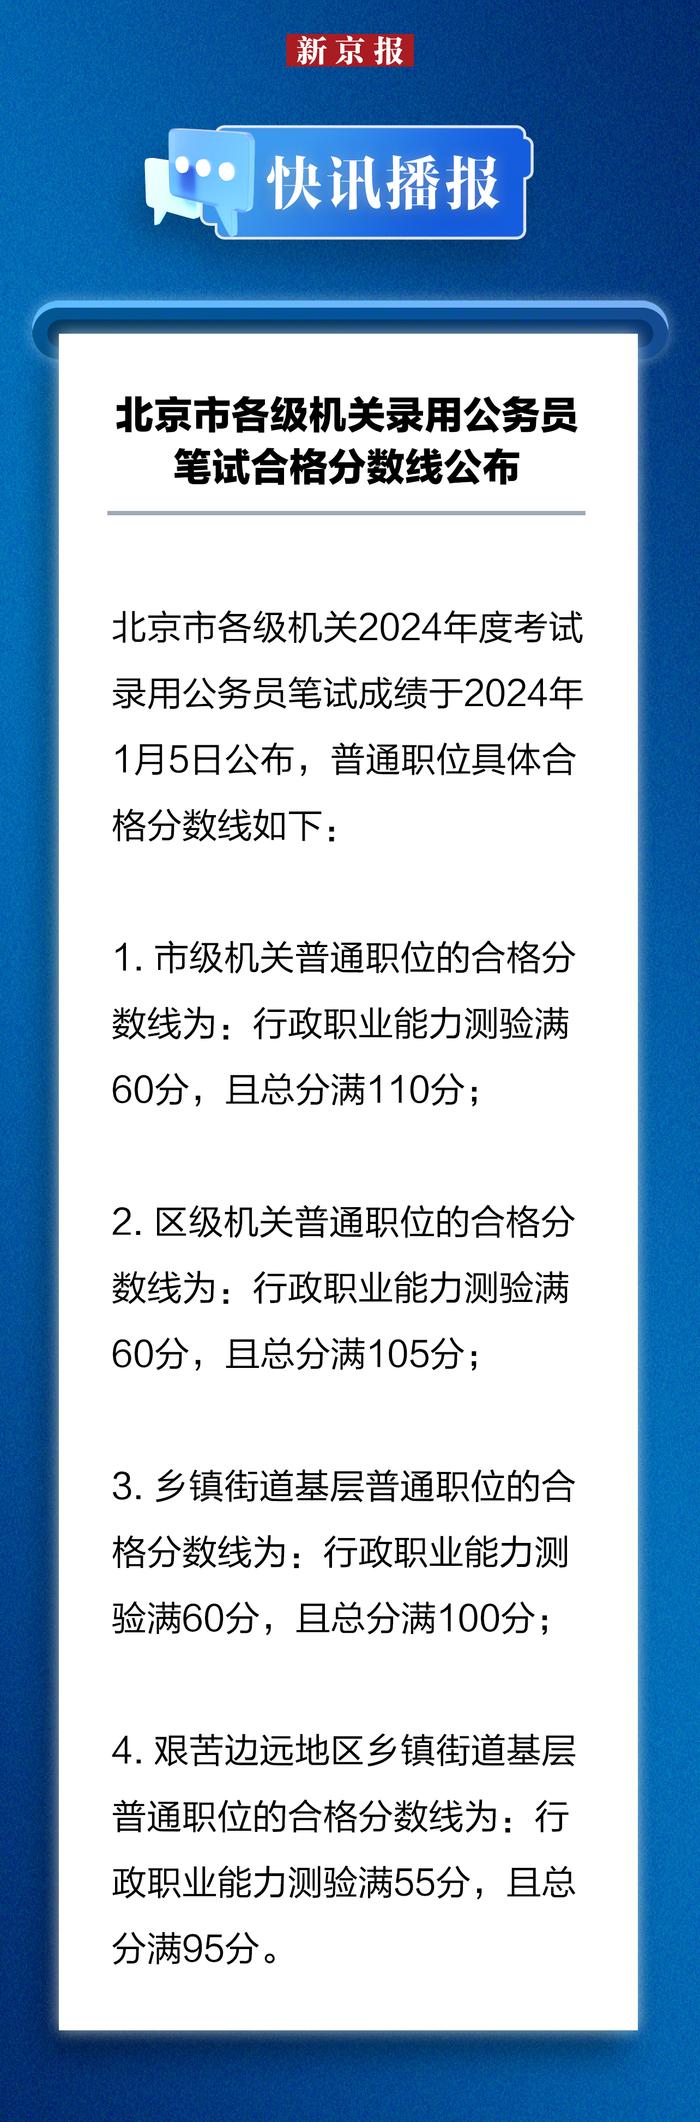 快讯播报丨北京市各级机关录用公务员笔试合格分数线公布